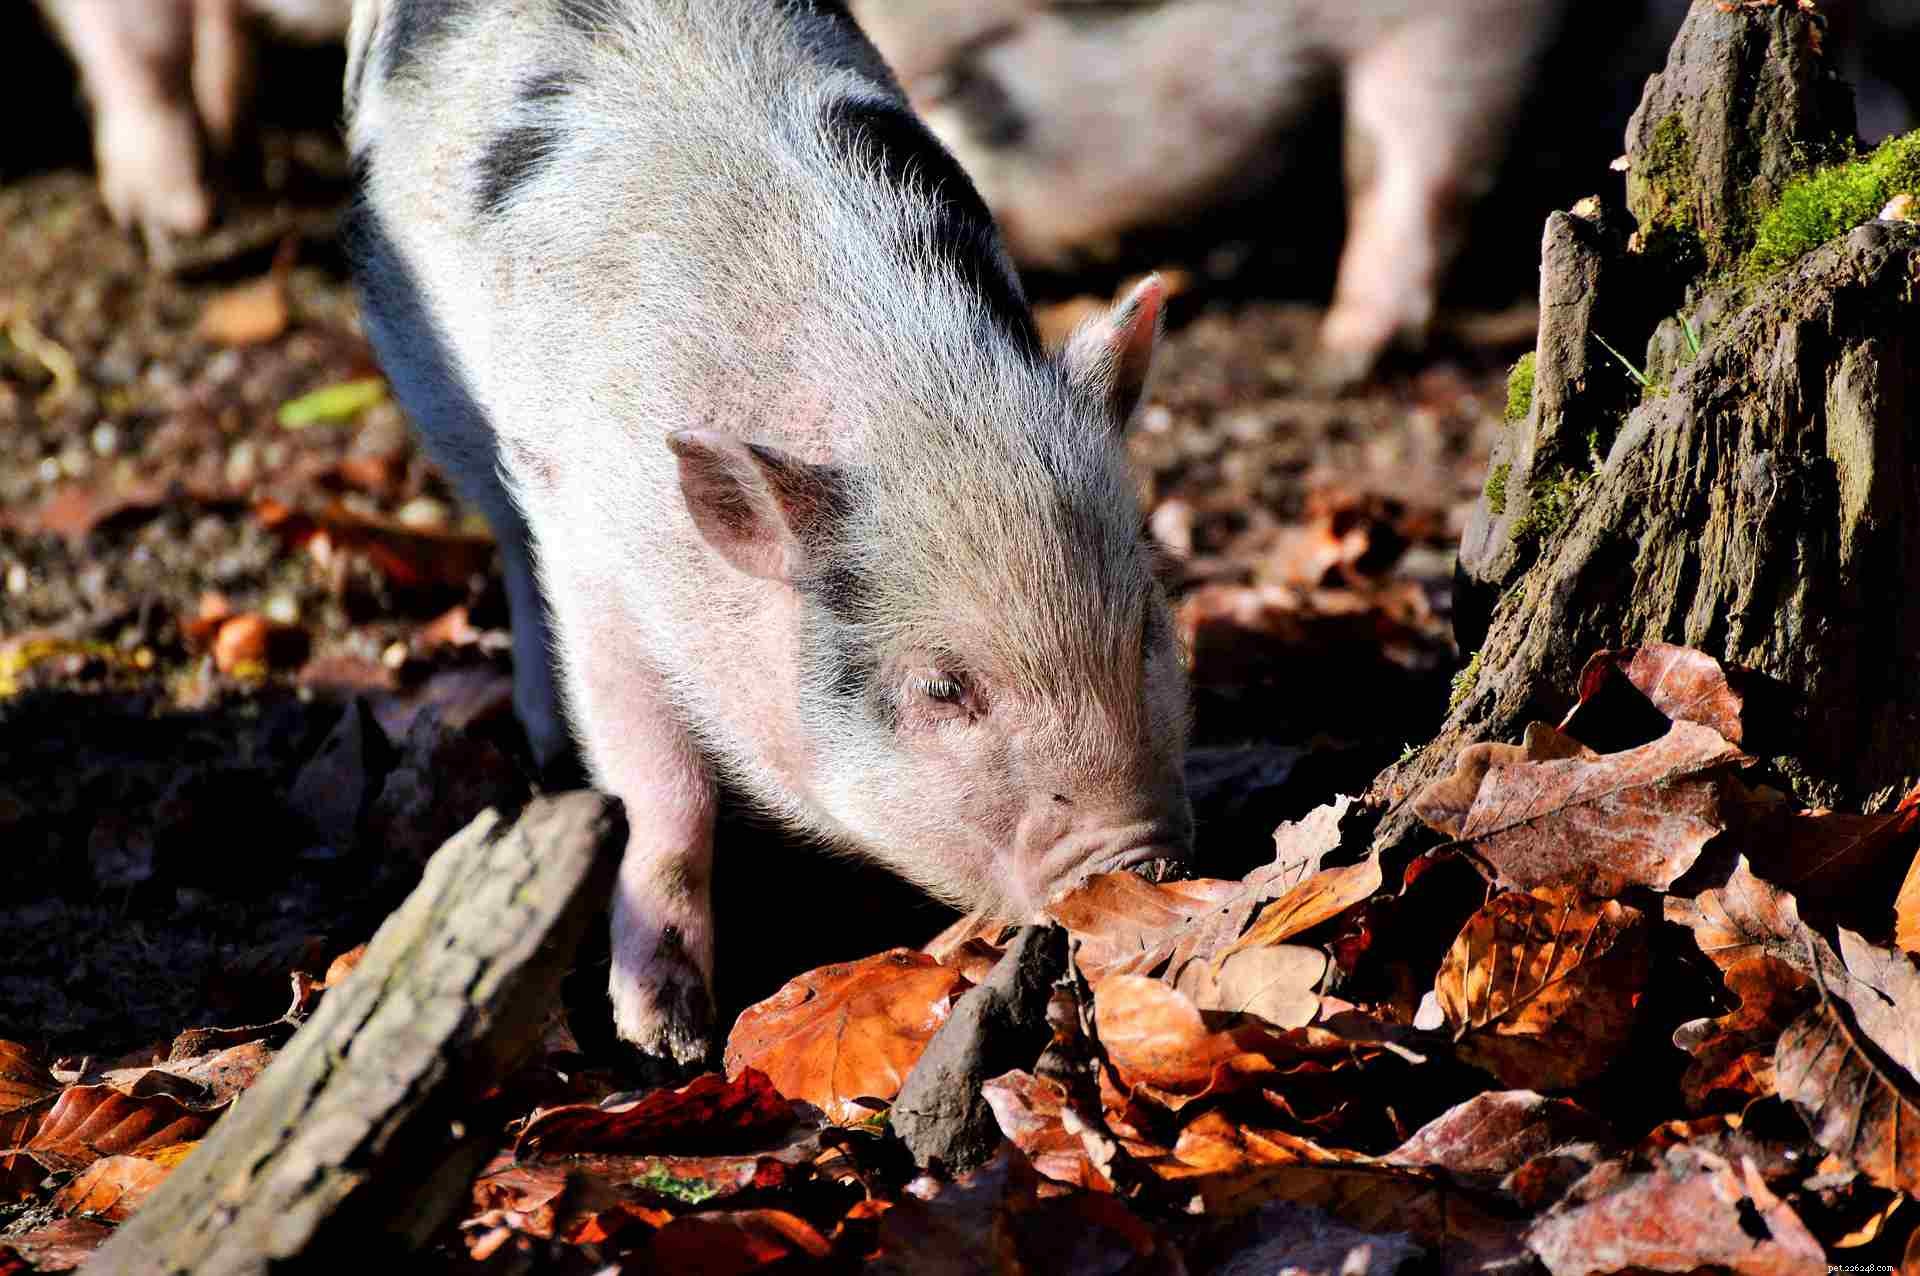 너무 귀엽지 않은 찻잔 돼지에 대한 8가지 사실